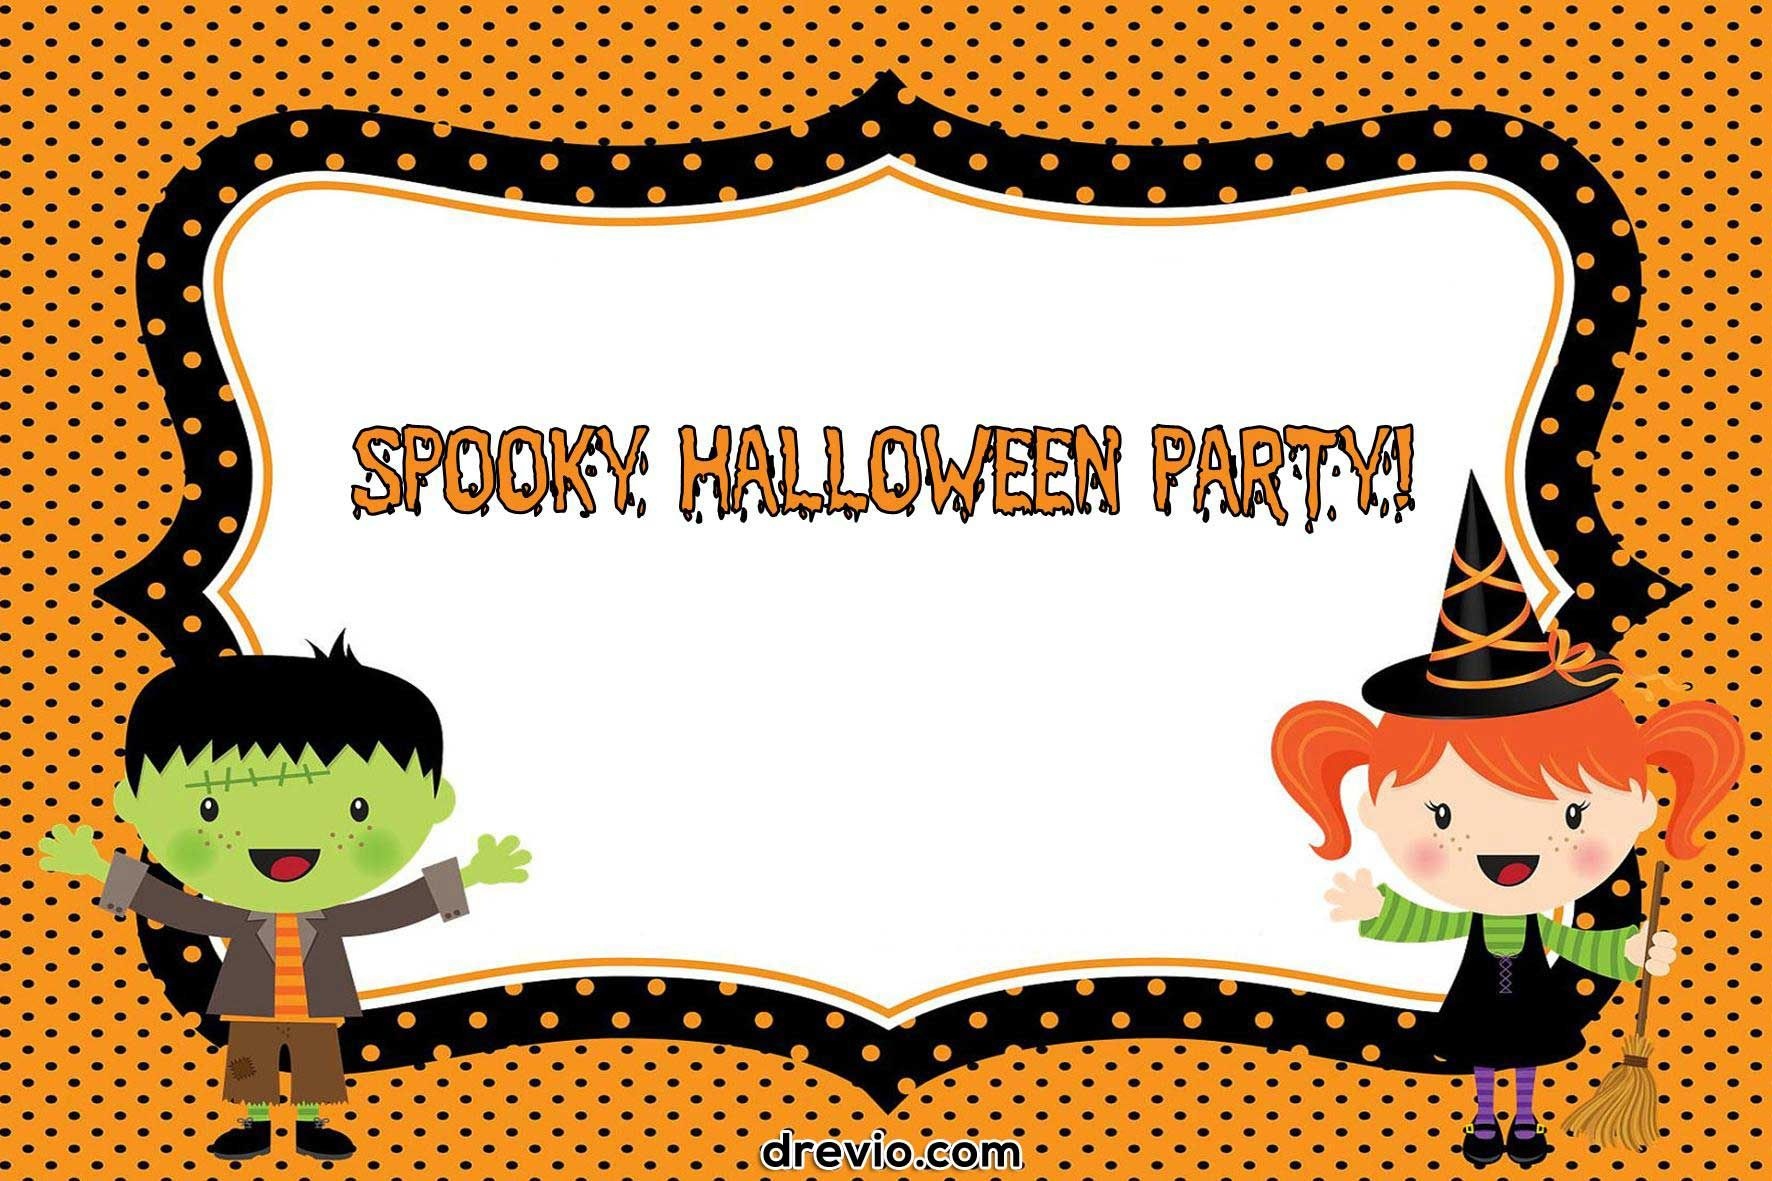 Free Printable Halloween Invitations | Free Printable Birthday - Free Printable Halloween Birthday Party Invitations